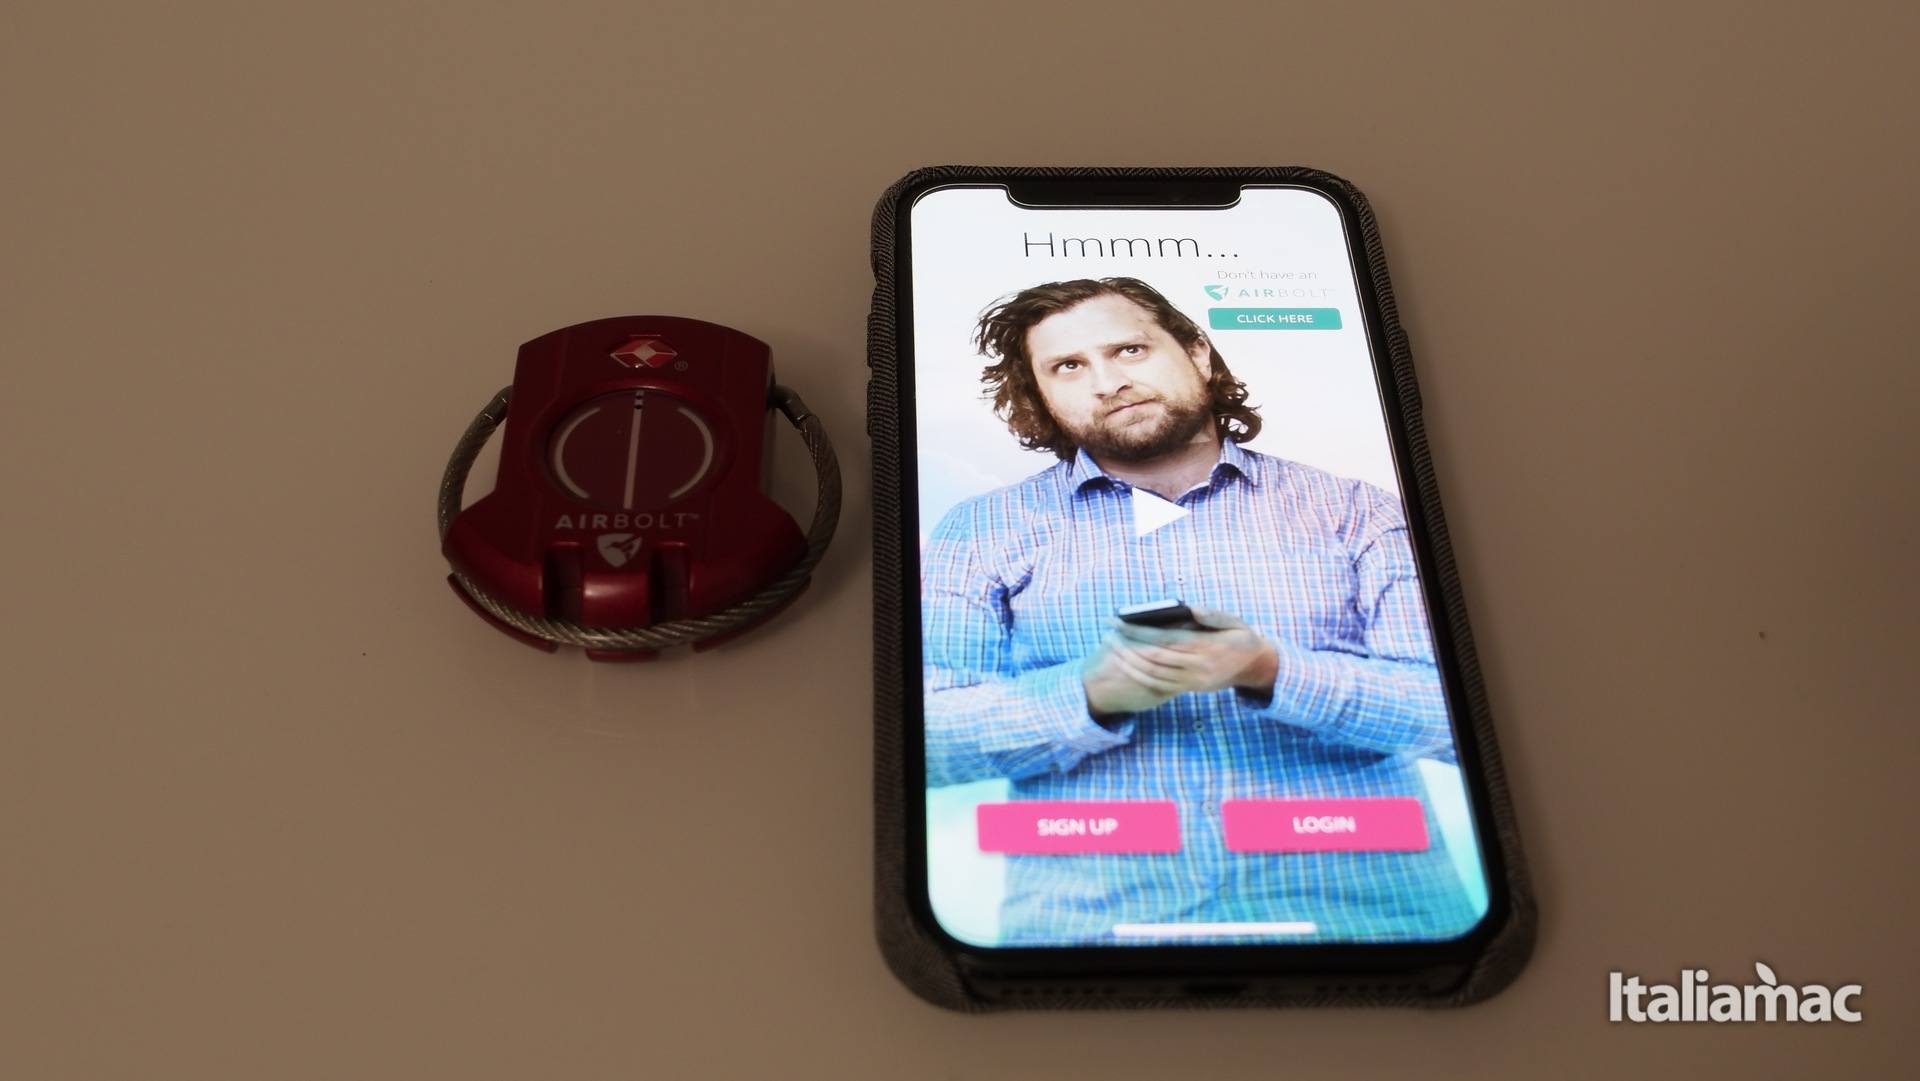 AirBolt: Anche il lucchetto si fa smart e controllabile da iPhone 5